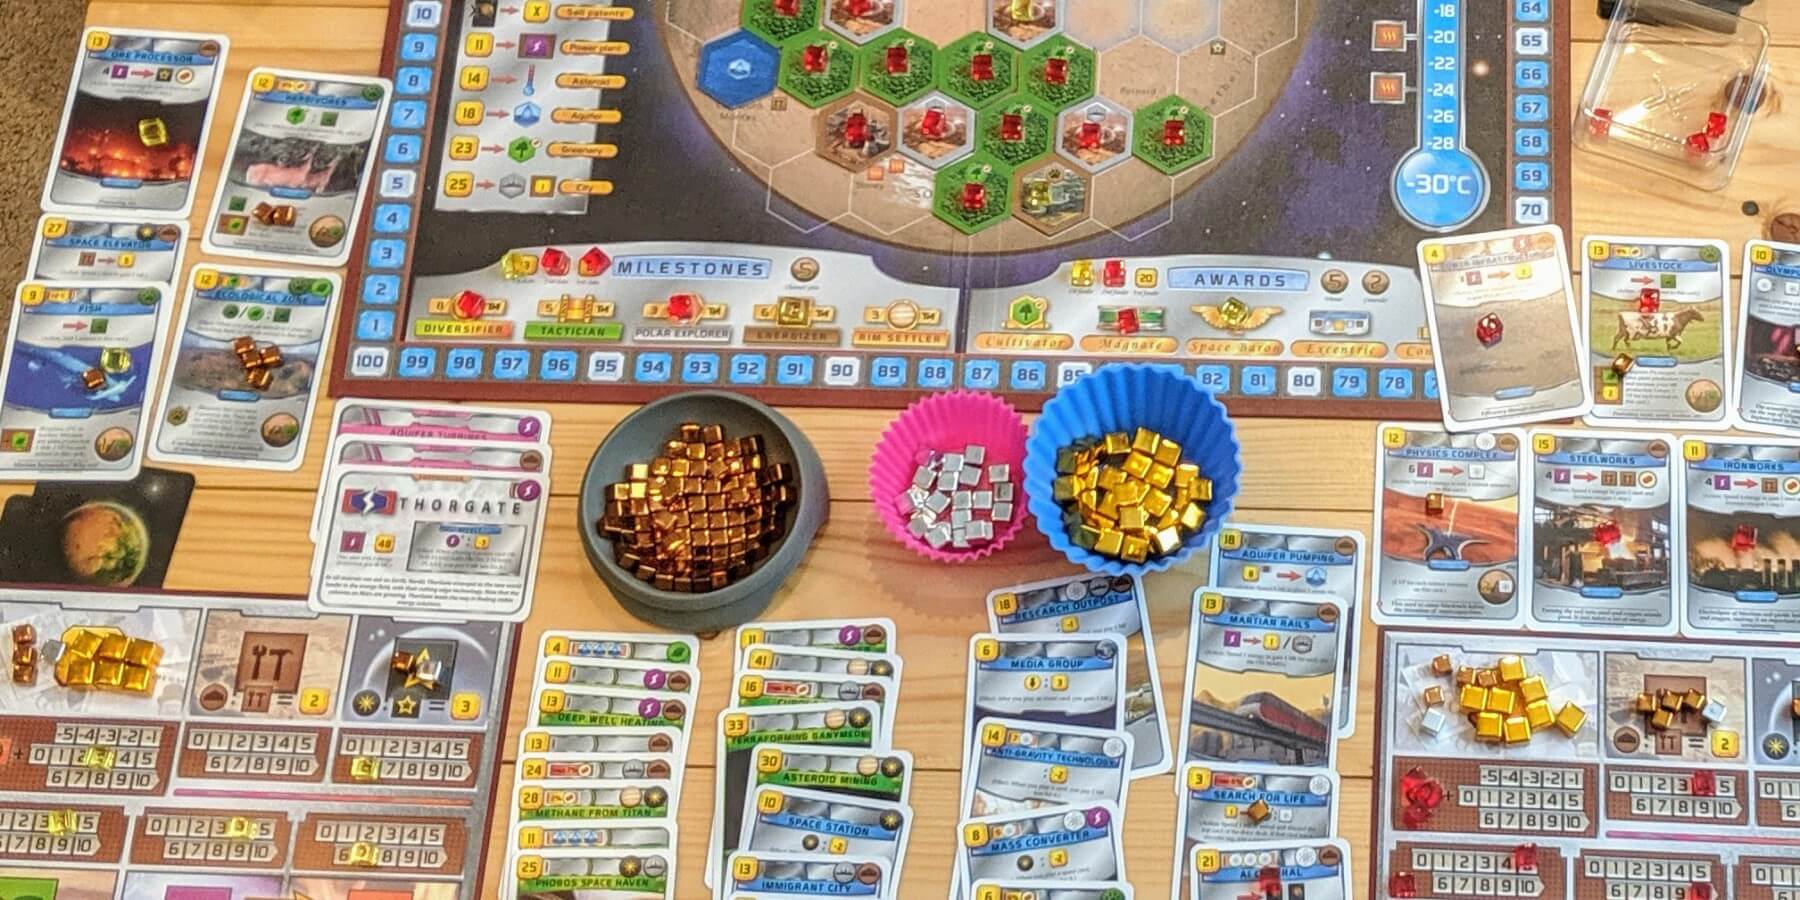 Terraforming Mars board game at scoring phase